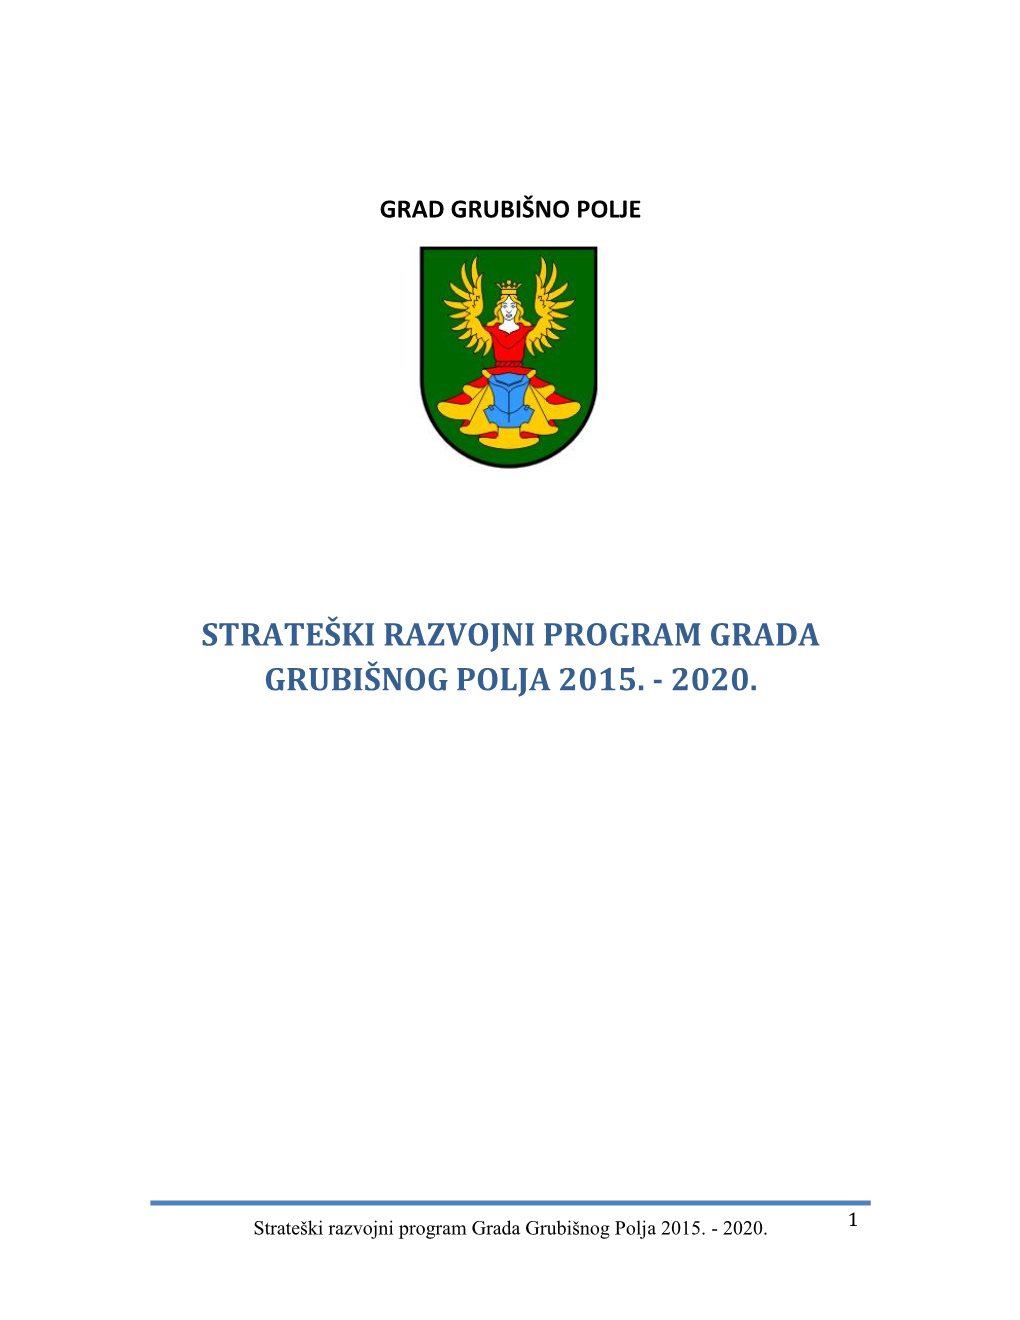 Strateški Razvojni Program Grada Grubišnog Polja 2015. - 2020